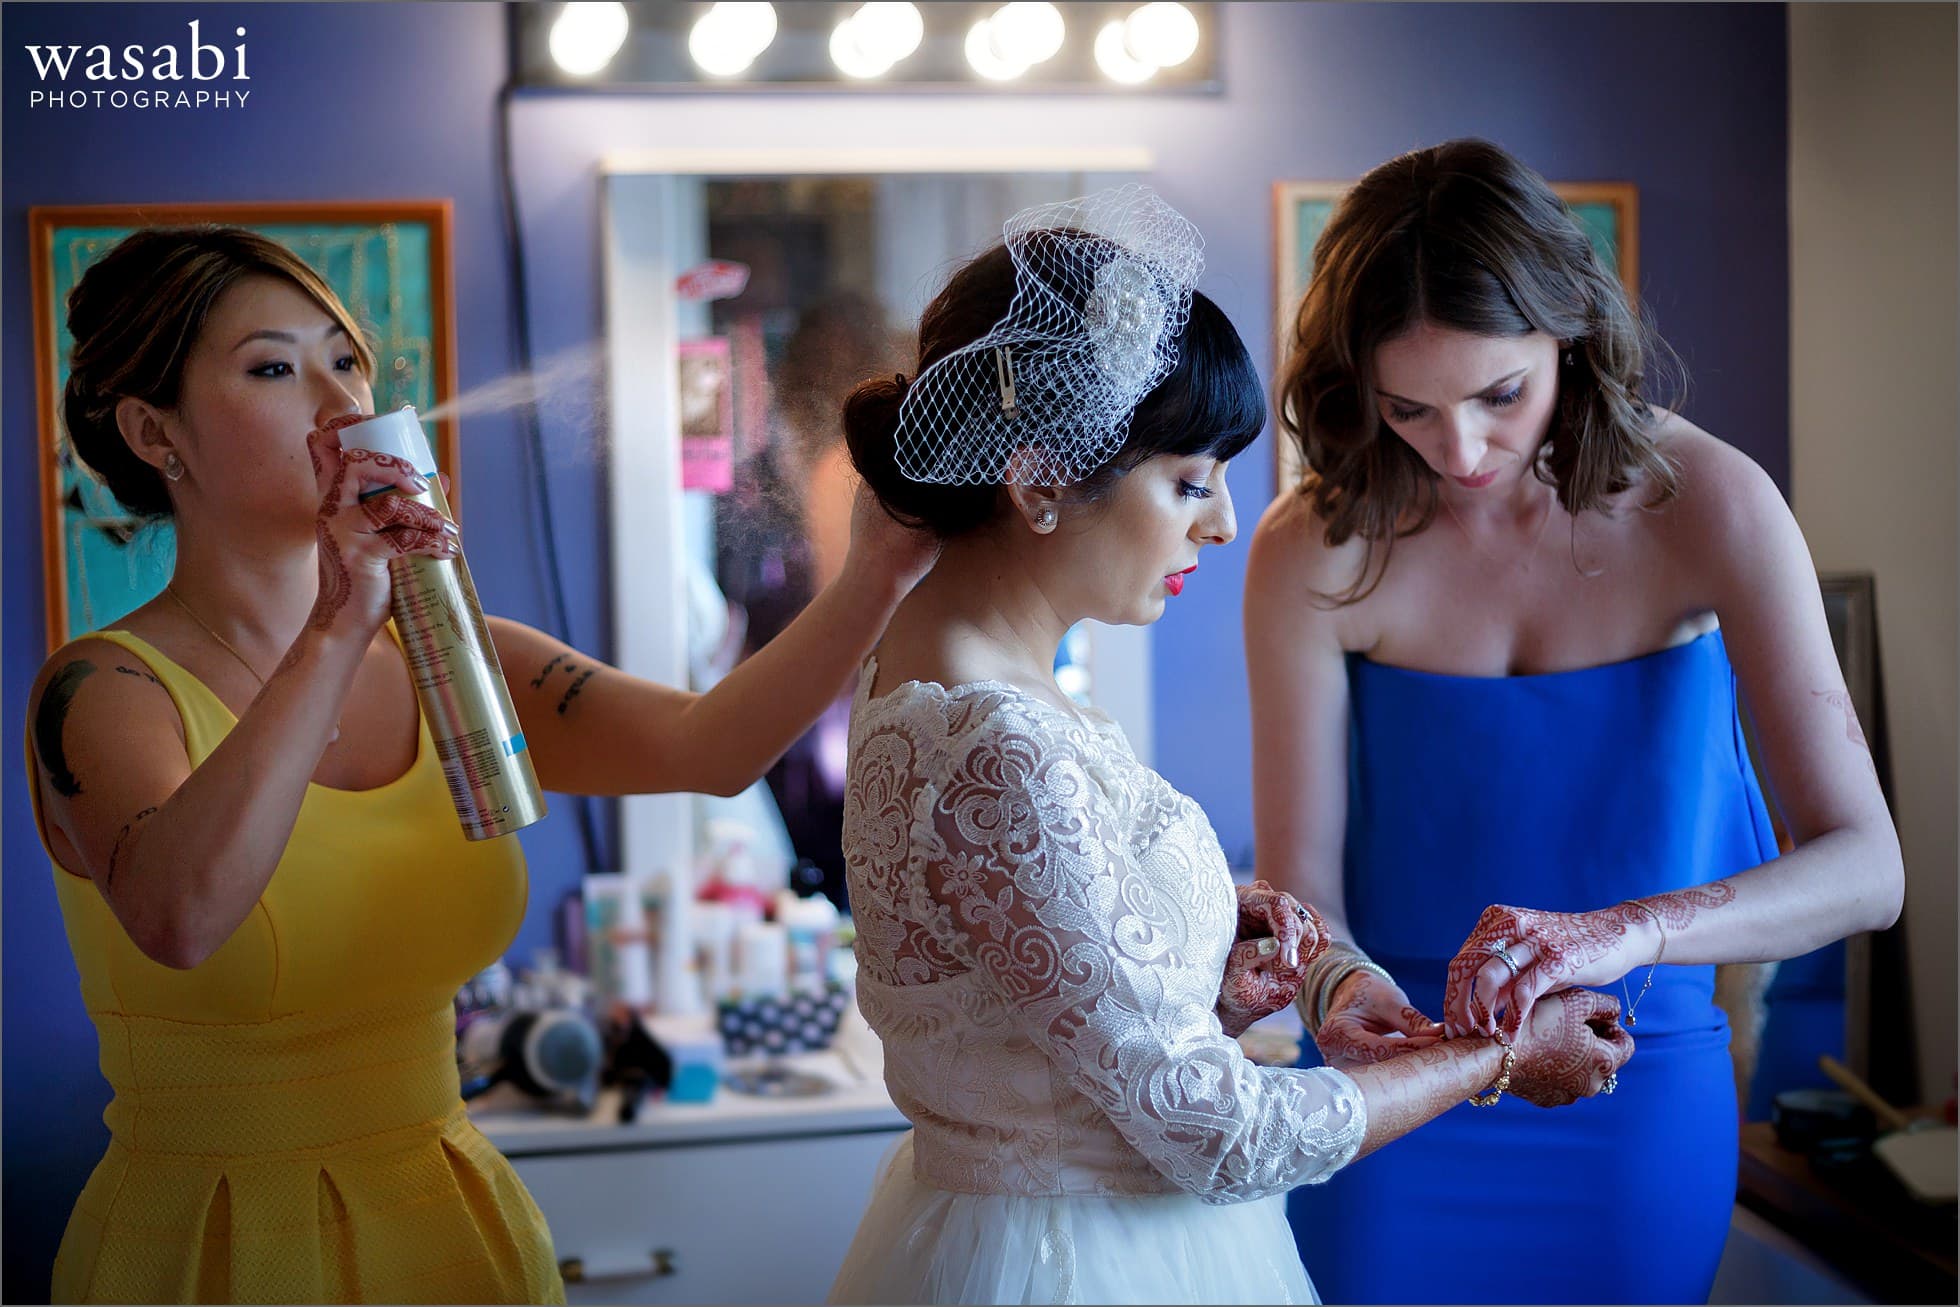 bridesmaids helping bride get ready